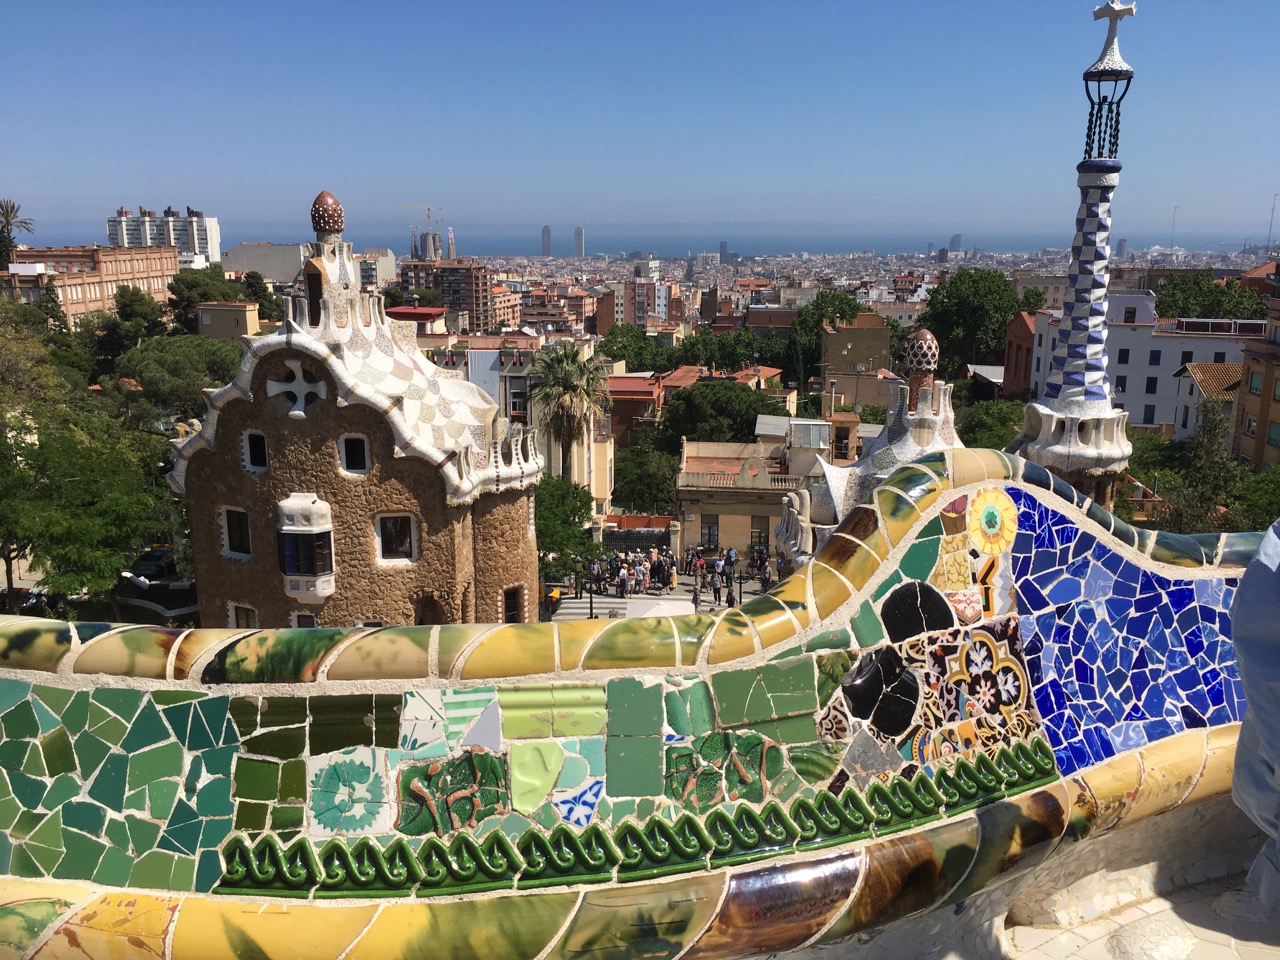 彩色碎瓷砖装饰的蛇形座椅，远处可以看到圣家堂和地中海，作为巴塞罗那的宣传照，拍照的游客人满为患，我在这里坐了10几分钟吧